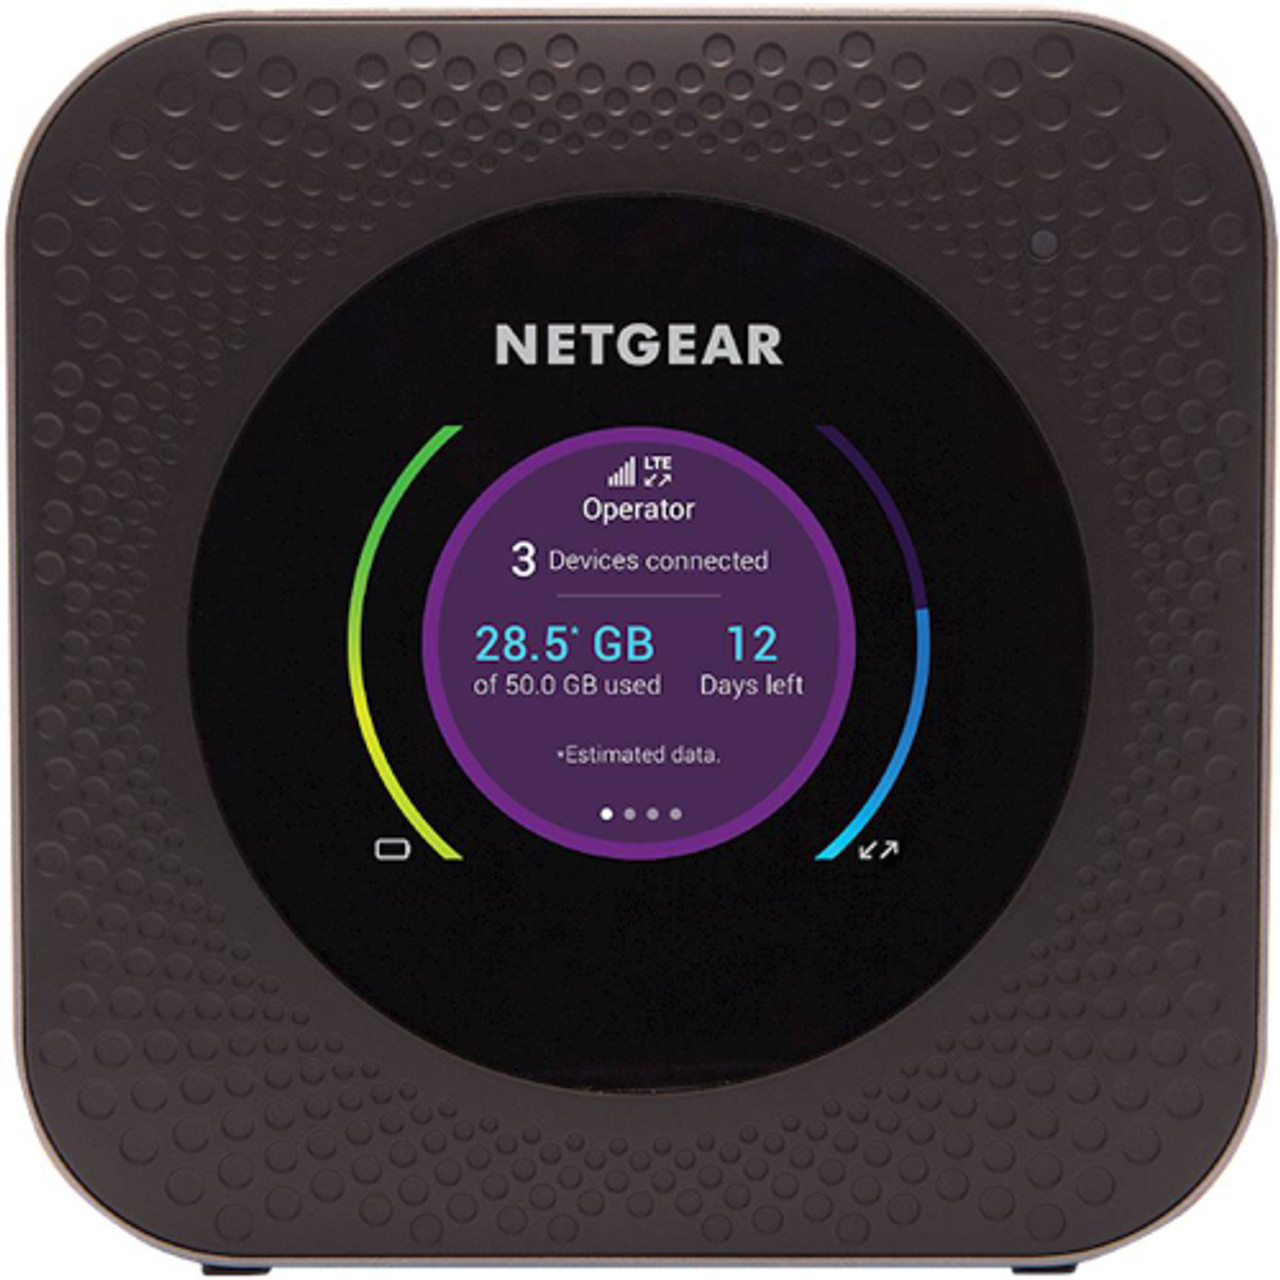 NETGEAR - Nighthawk M1 4G LTE Mobile Hotspot Router